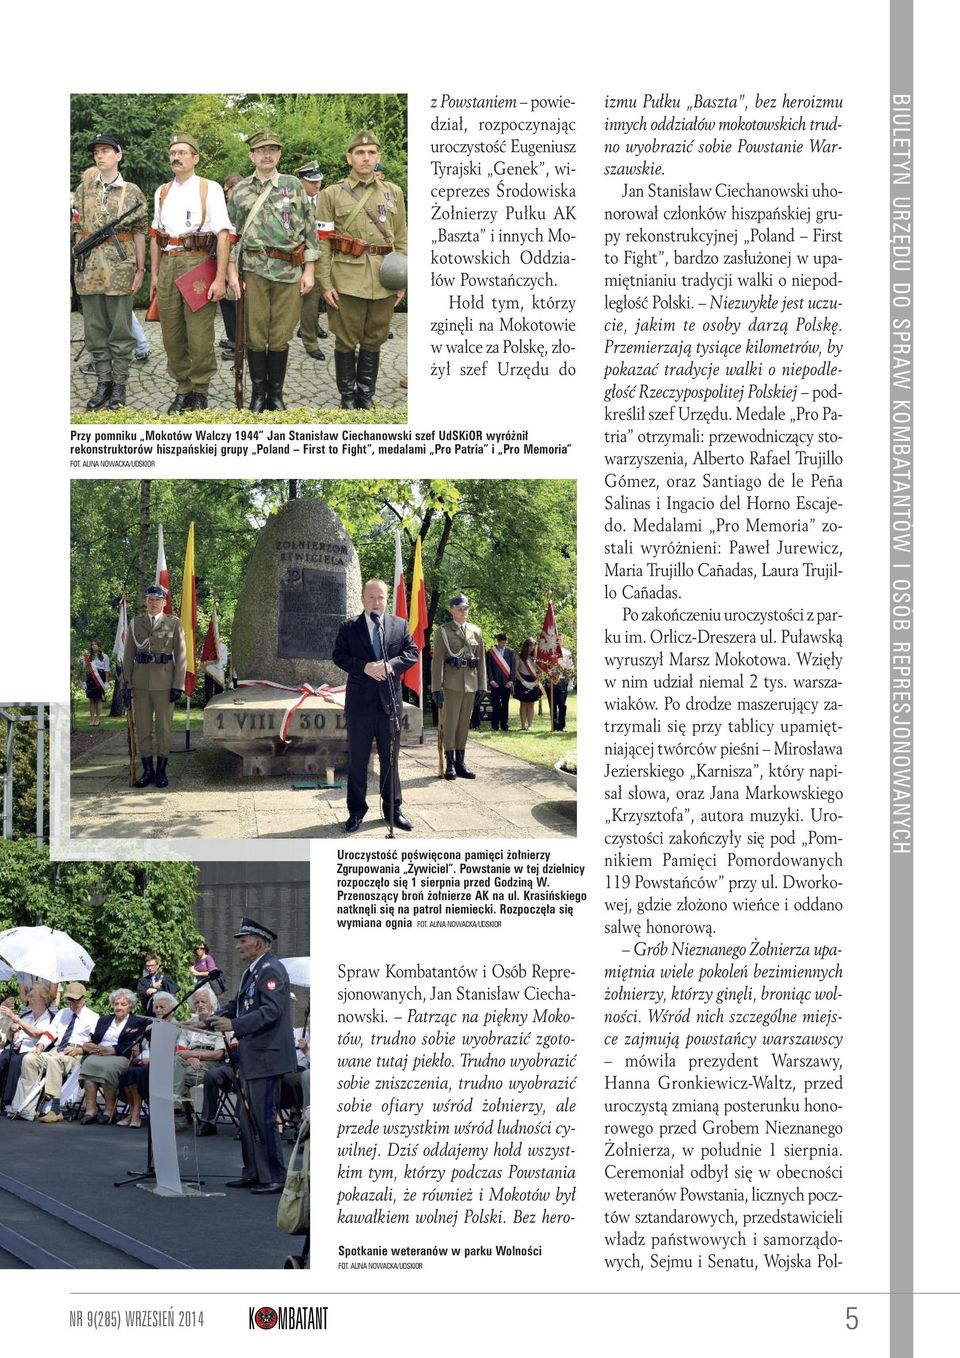 Poland First to Fight, medalami Pro Patria i Pro Memoria FOT. ALINA NOWACKA/UDSKIOR Uroczystość poświęcona pamięci żołnierzy Zgrupowania Żywiciel.